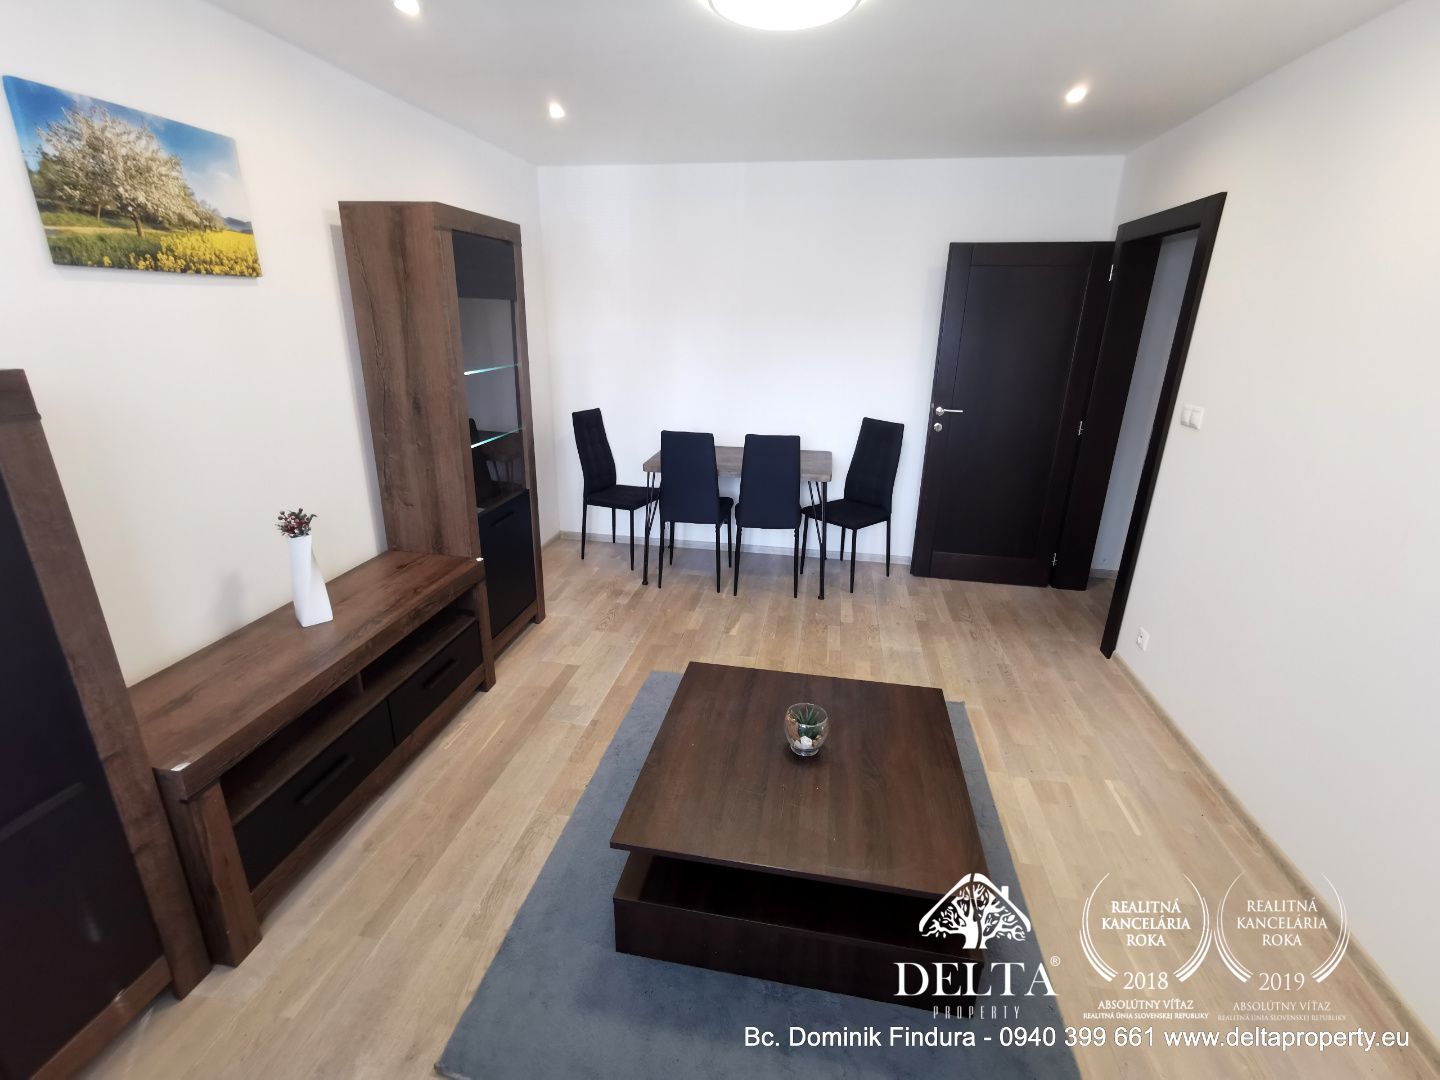 DELTA - Krásny, zariadený 2-izbový byt na predaj Poprad, ul. L.Svobodu